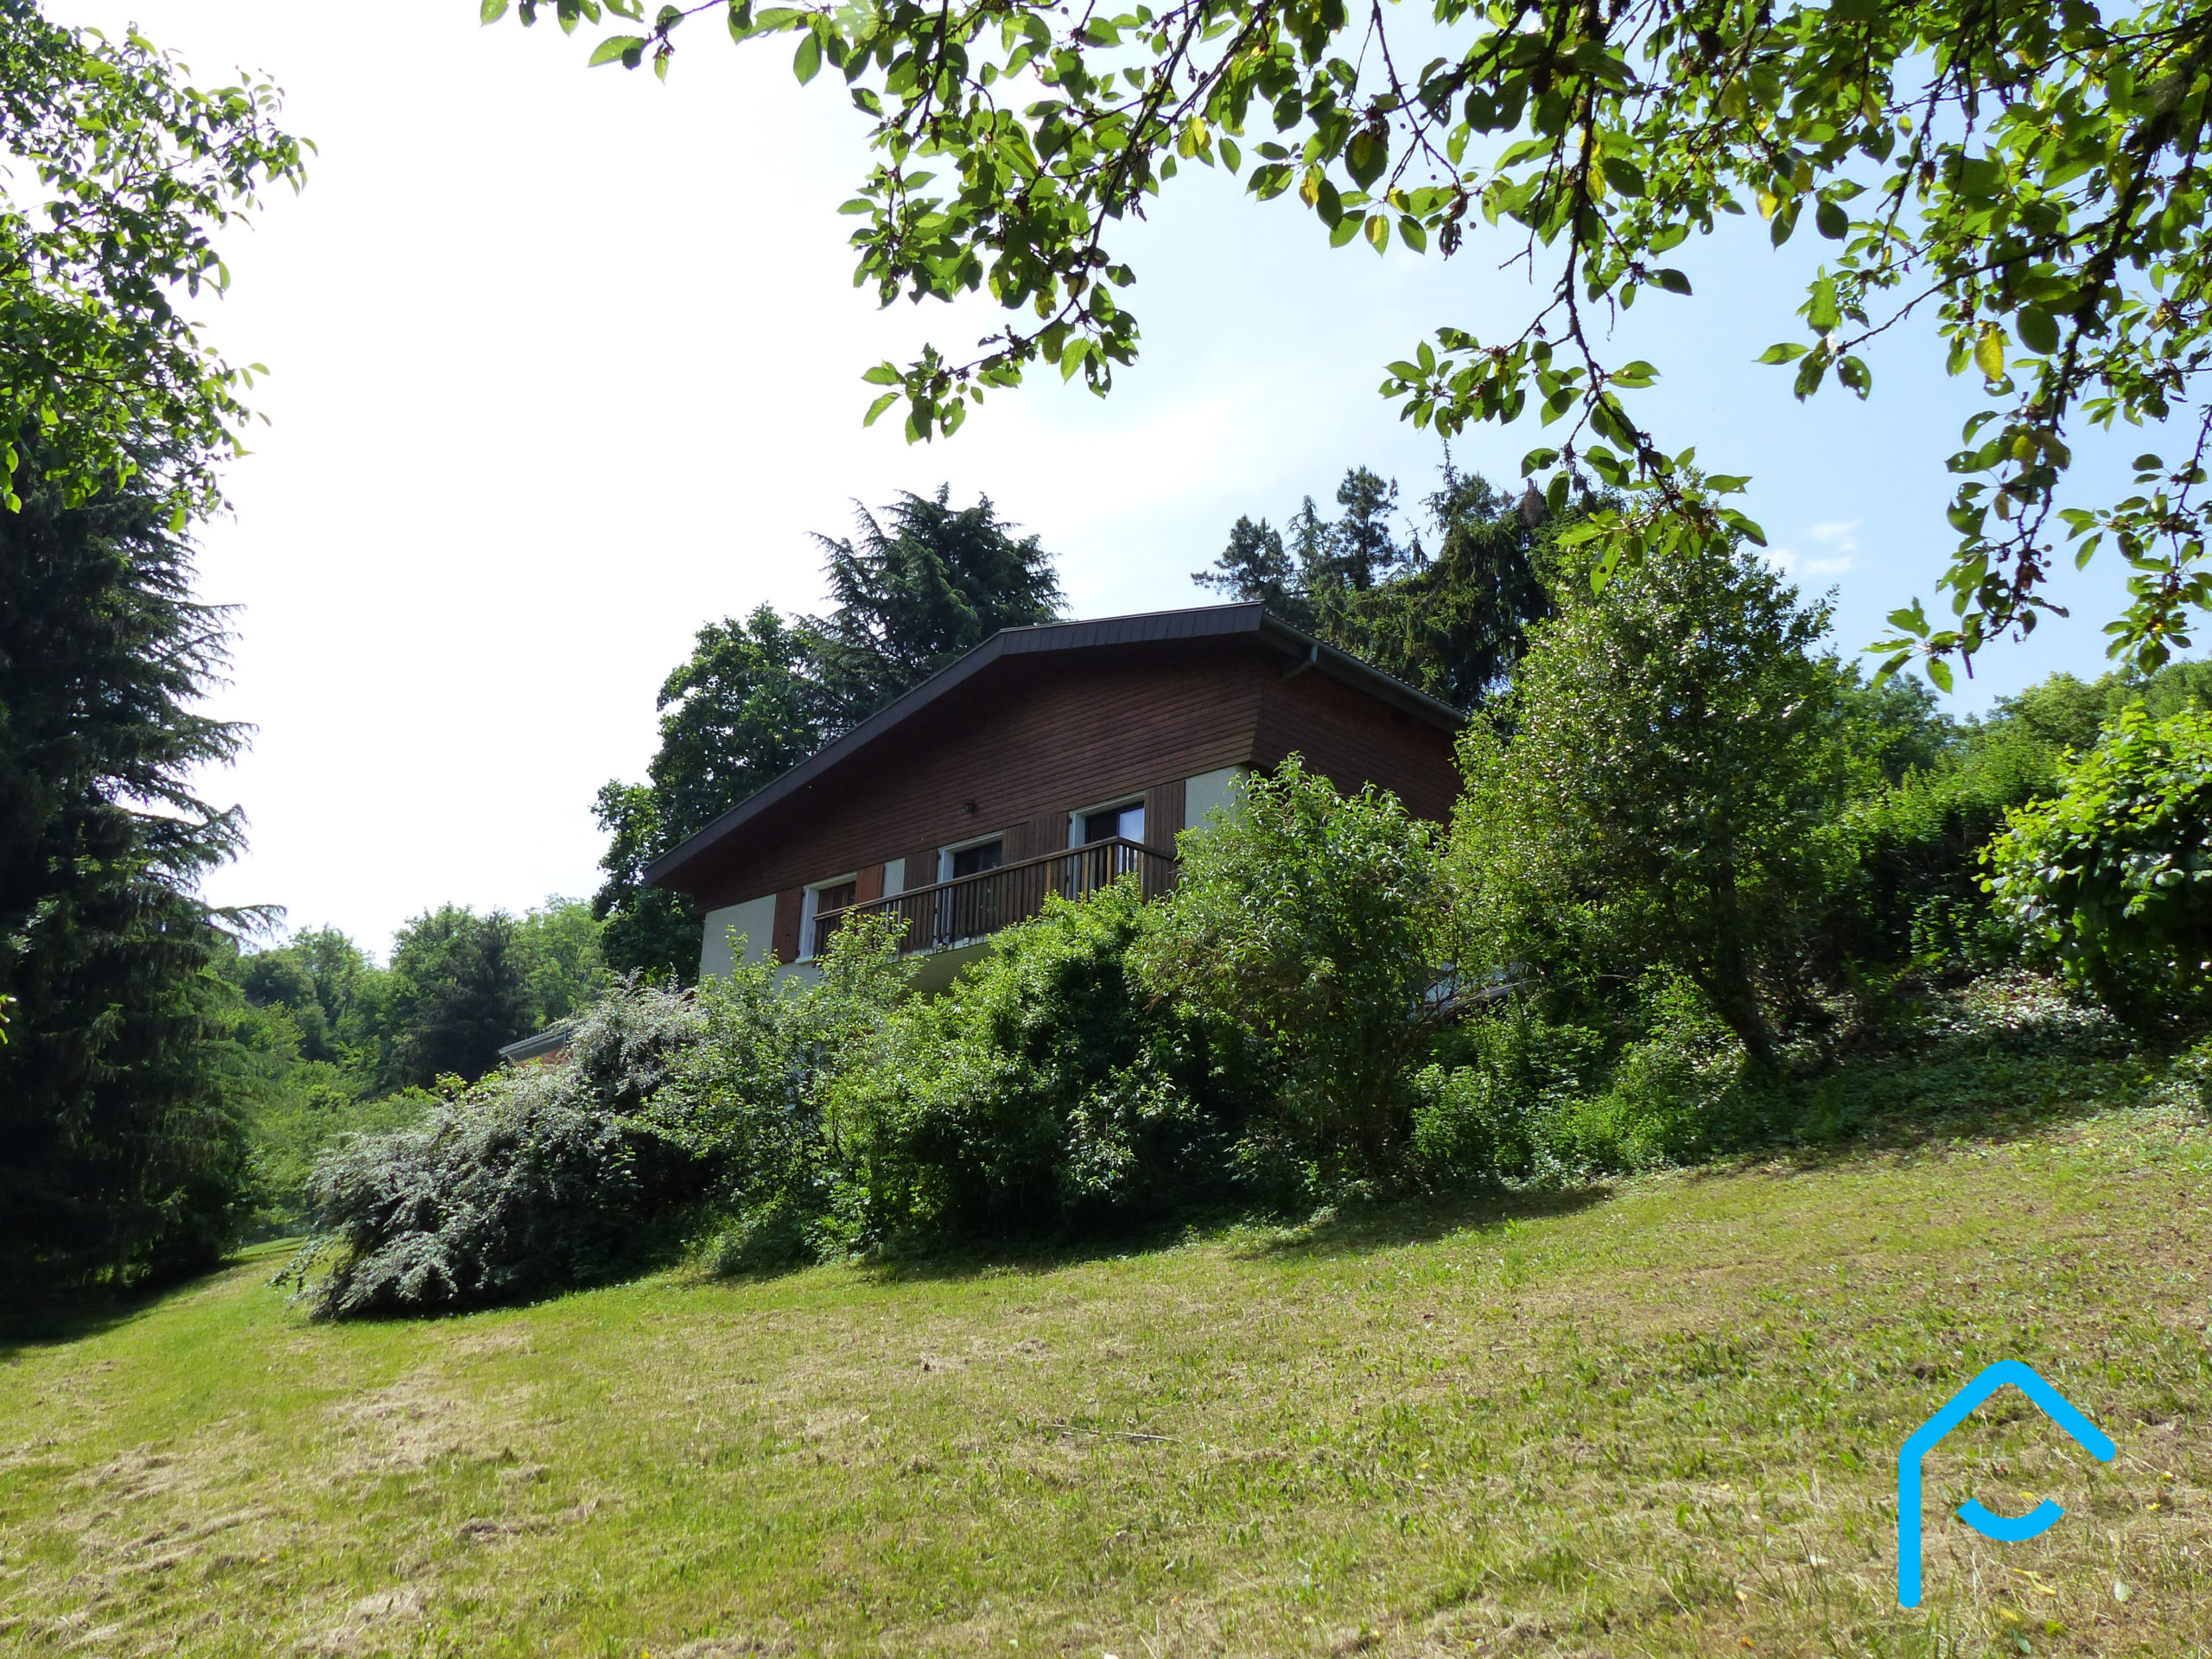 A vendre Savoie Chambéry Jacob-Bellecombette maison individuelle terraini 5 chambres quartier résidentiel rare à la vente vue 11